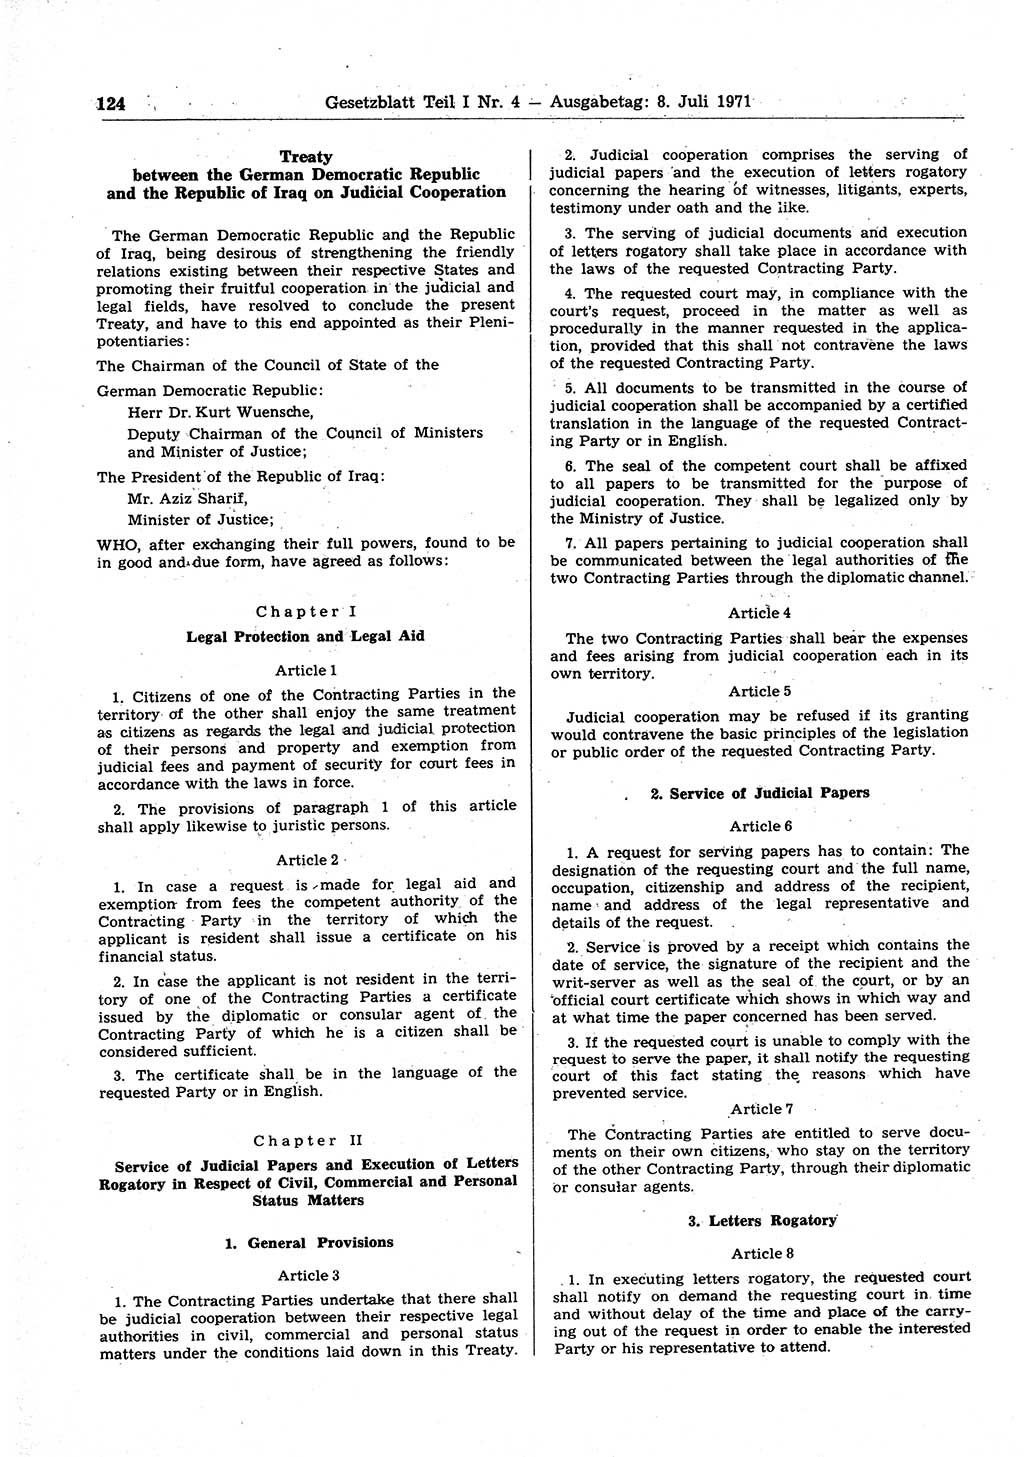 Gesetzblatt (GBl.) der Deutschen Demokratischen Republik (DDR) Teil Ⅰ 1971, Seite 124 (GBl. DDR Ⅰ 1971, S. 124)